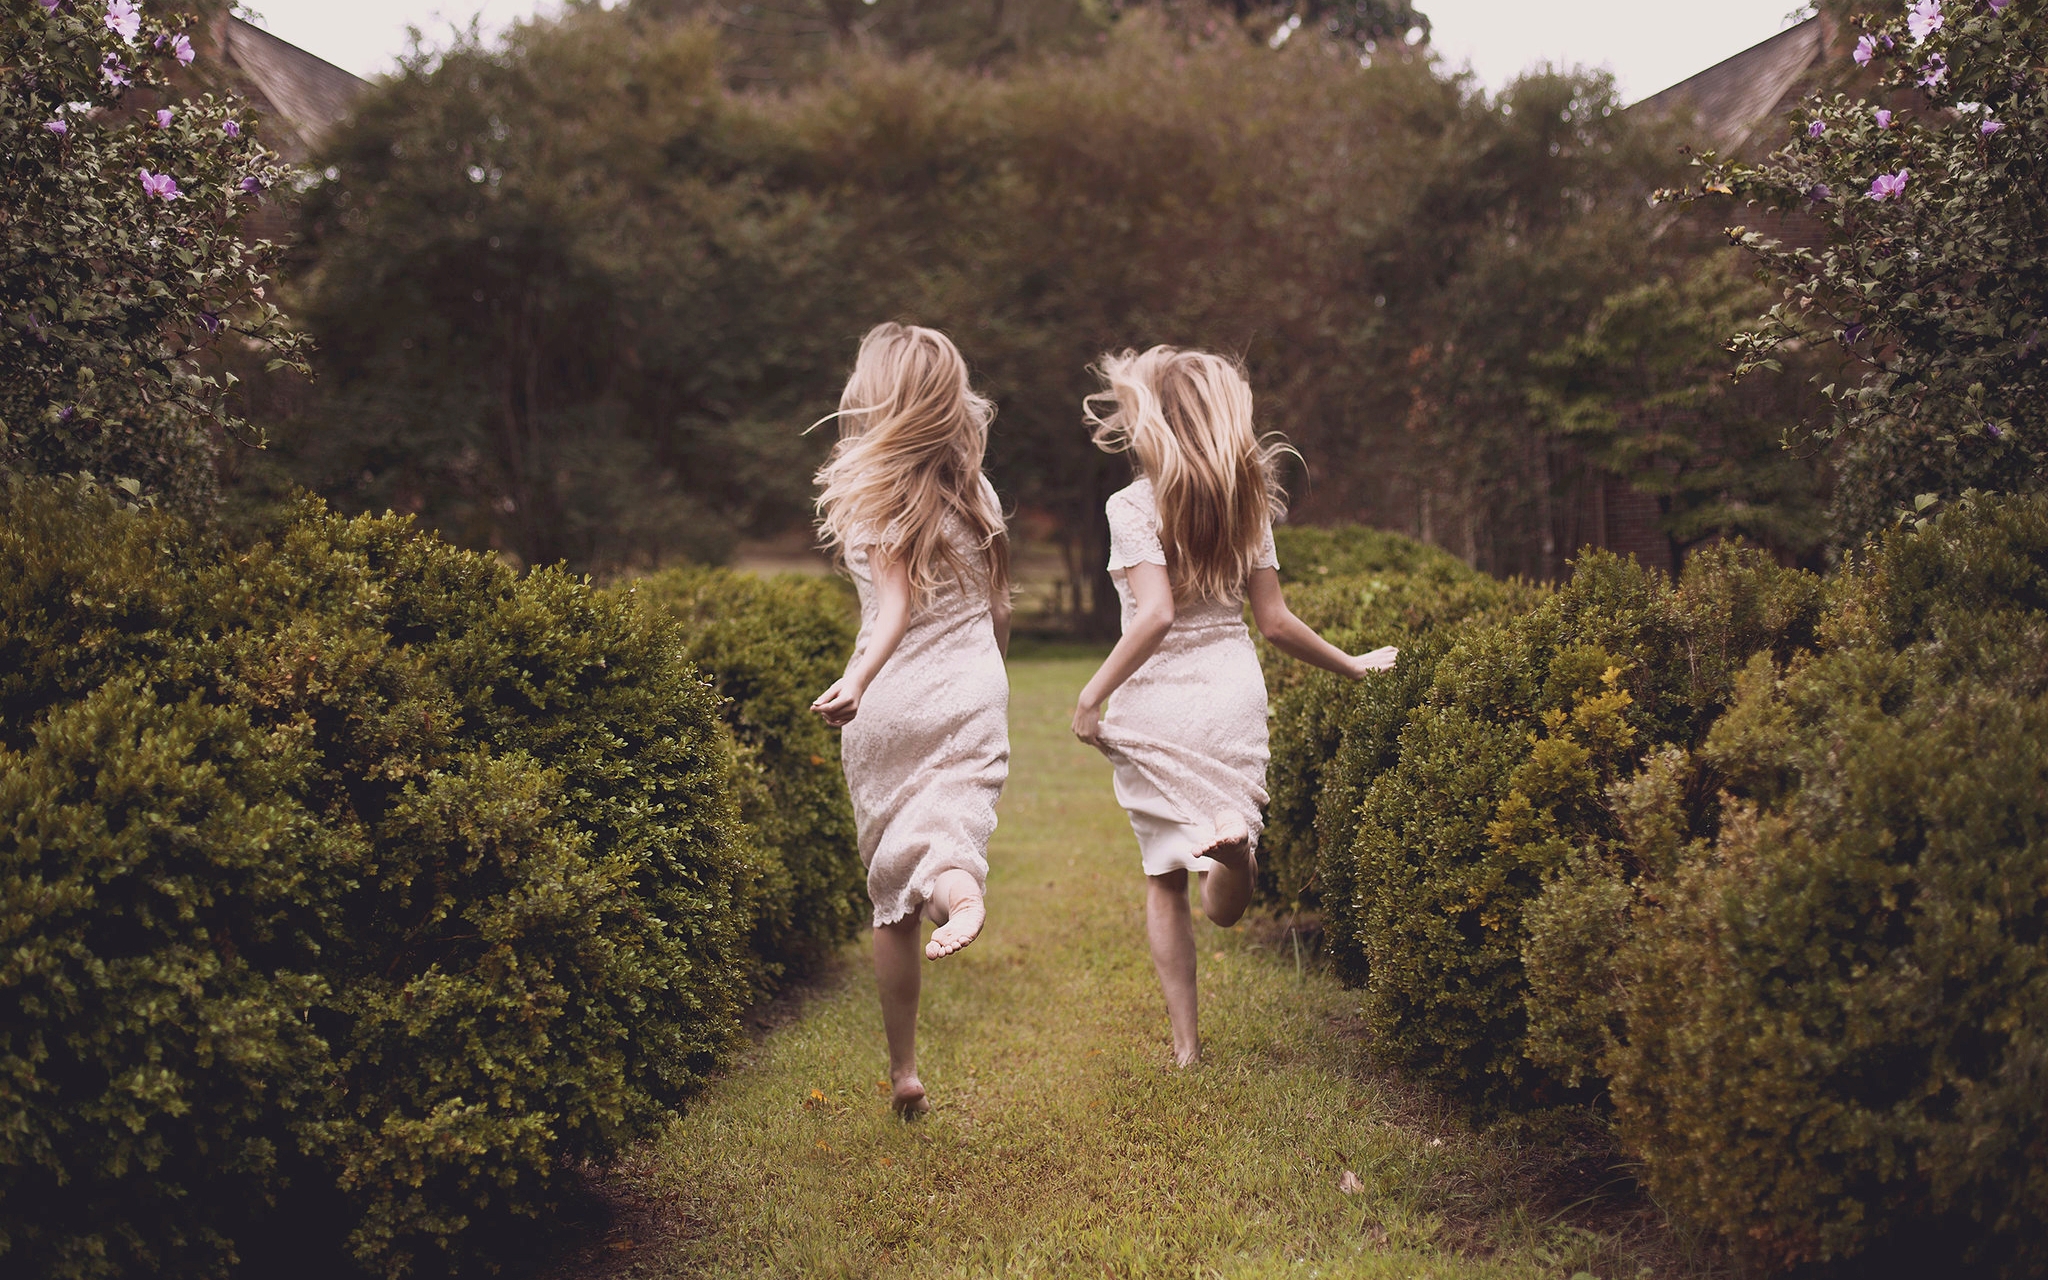 Women Shrubbery Shrubs Running Twins Blonde Barefoot Women Outdoors 2048x1280